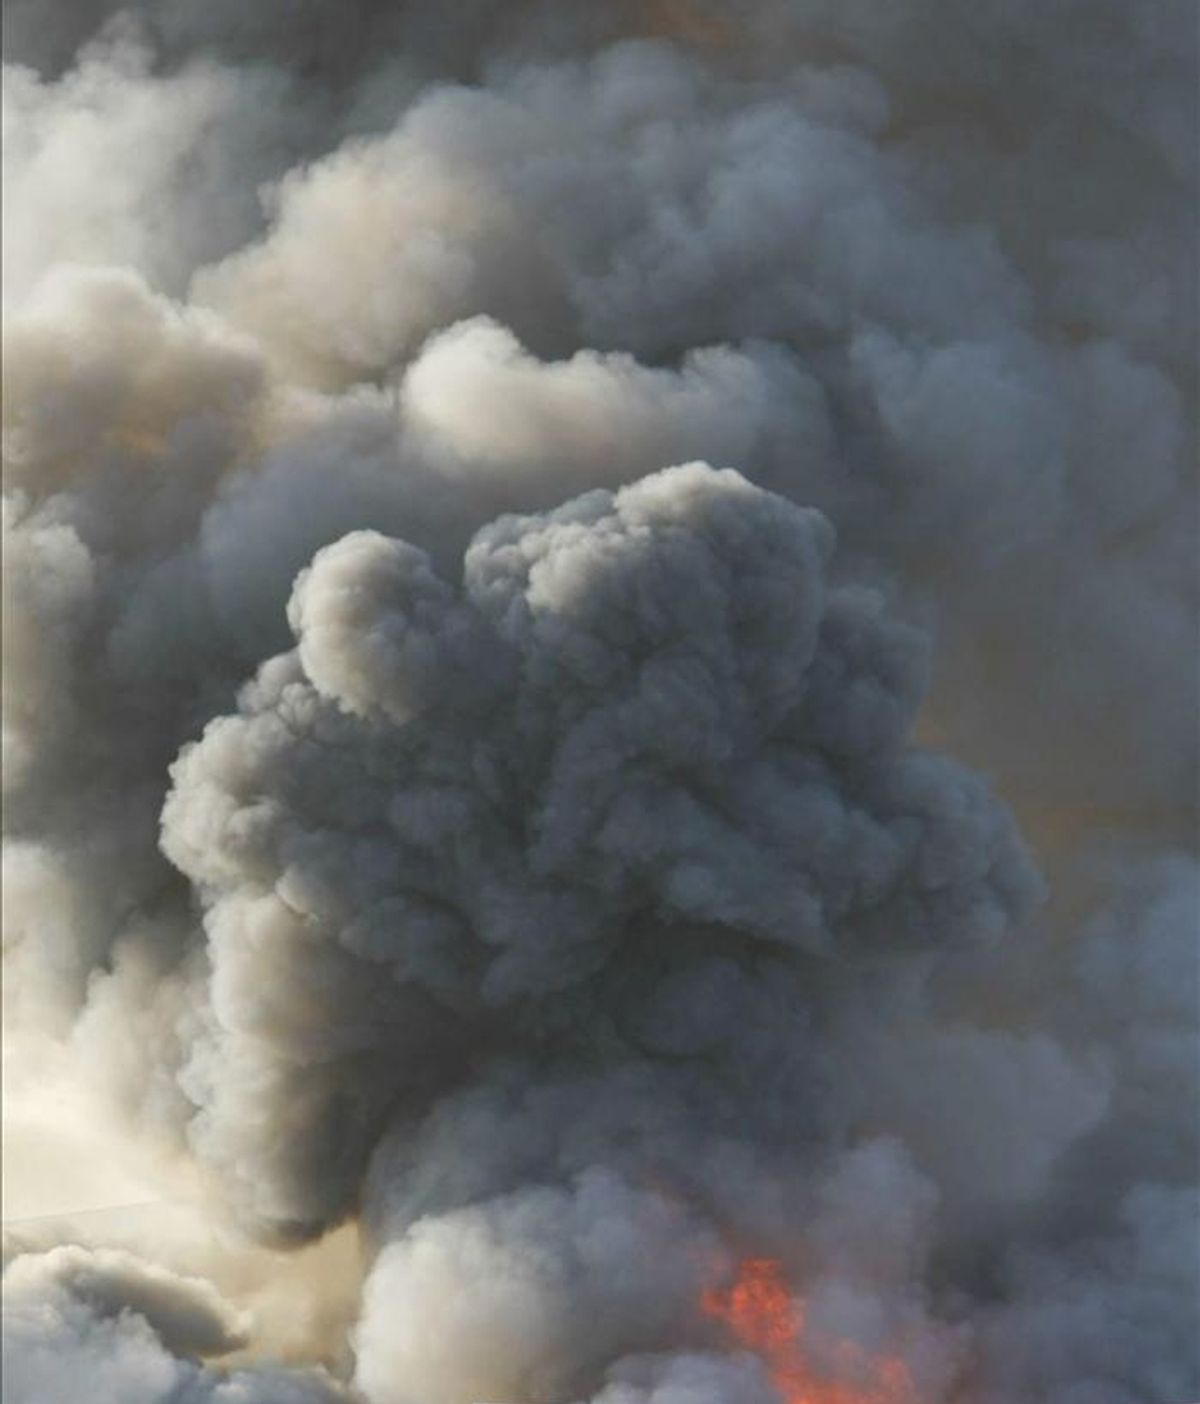 Vista de la columna de humo de un incendio declarado en Zaragoza. EFE/Archivo